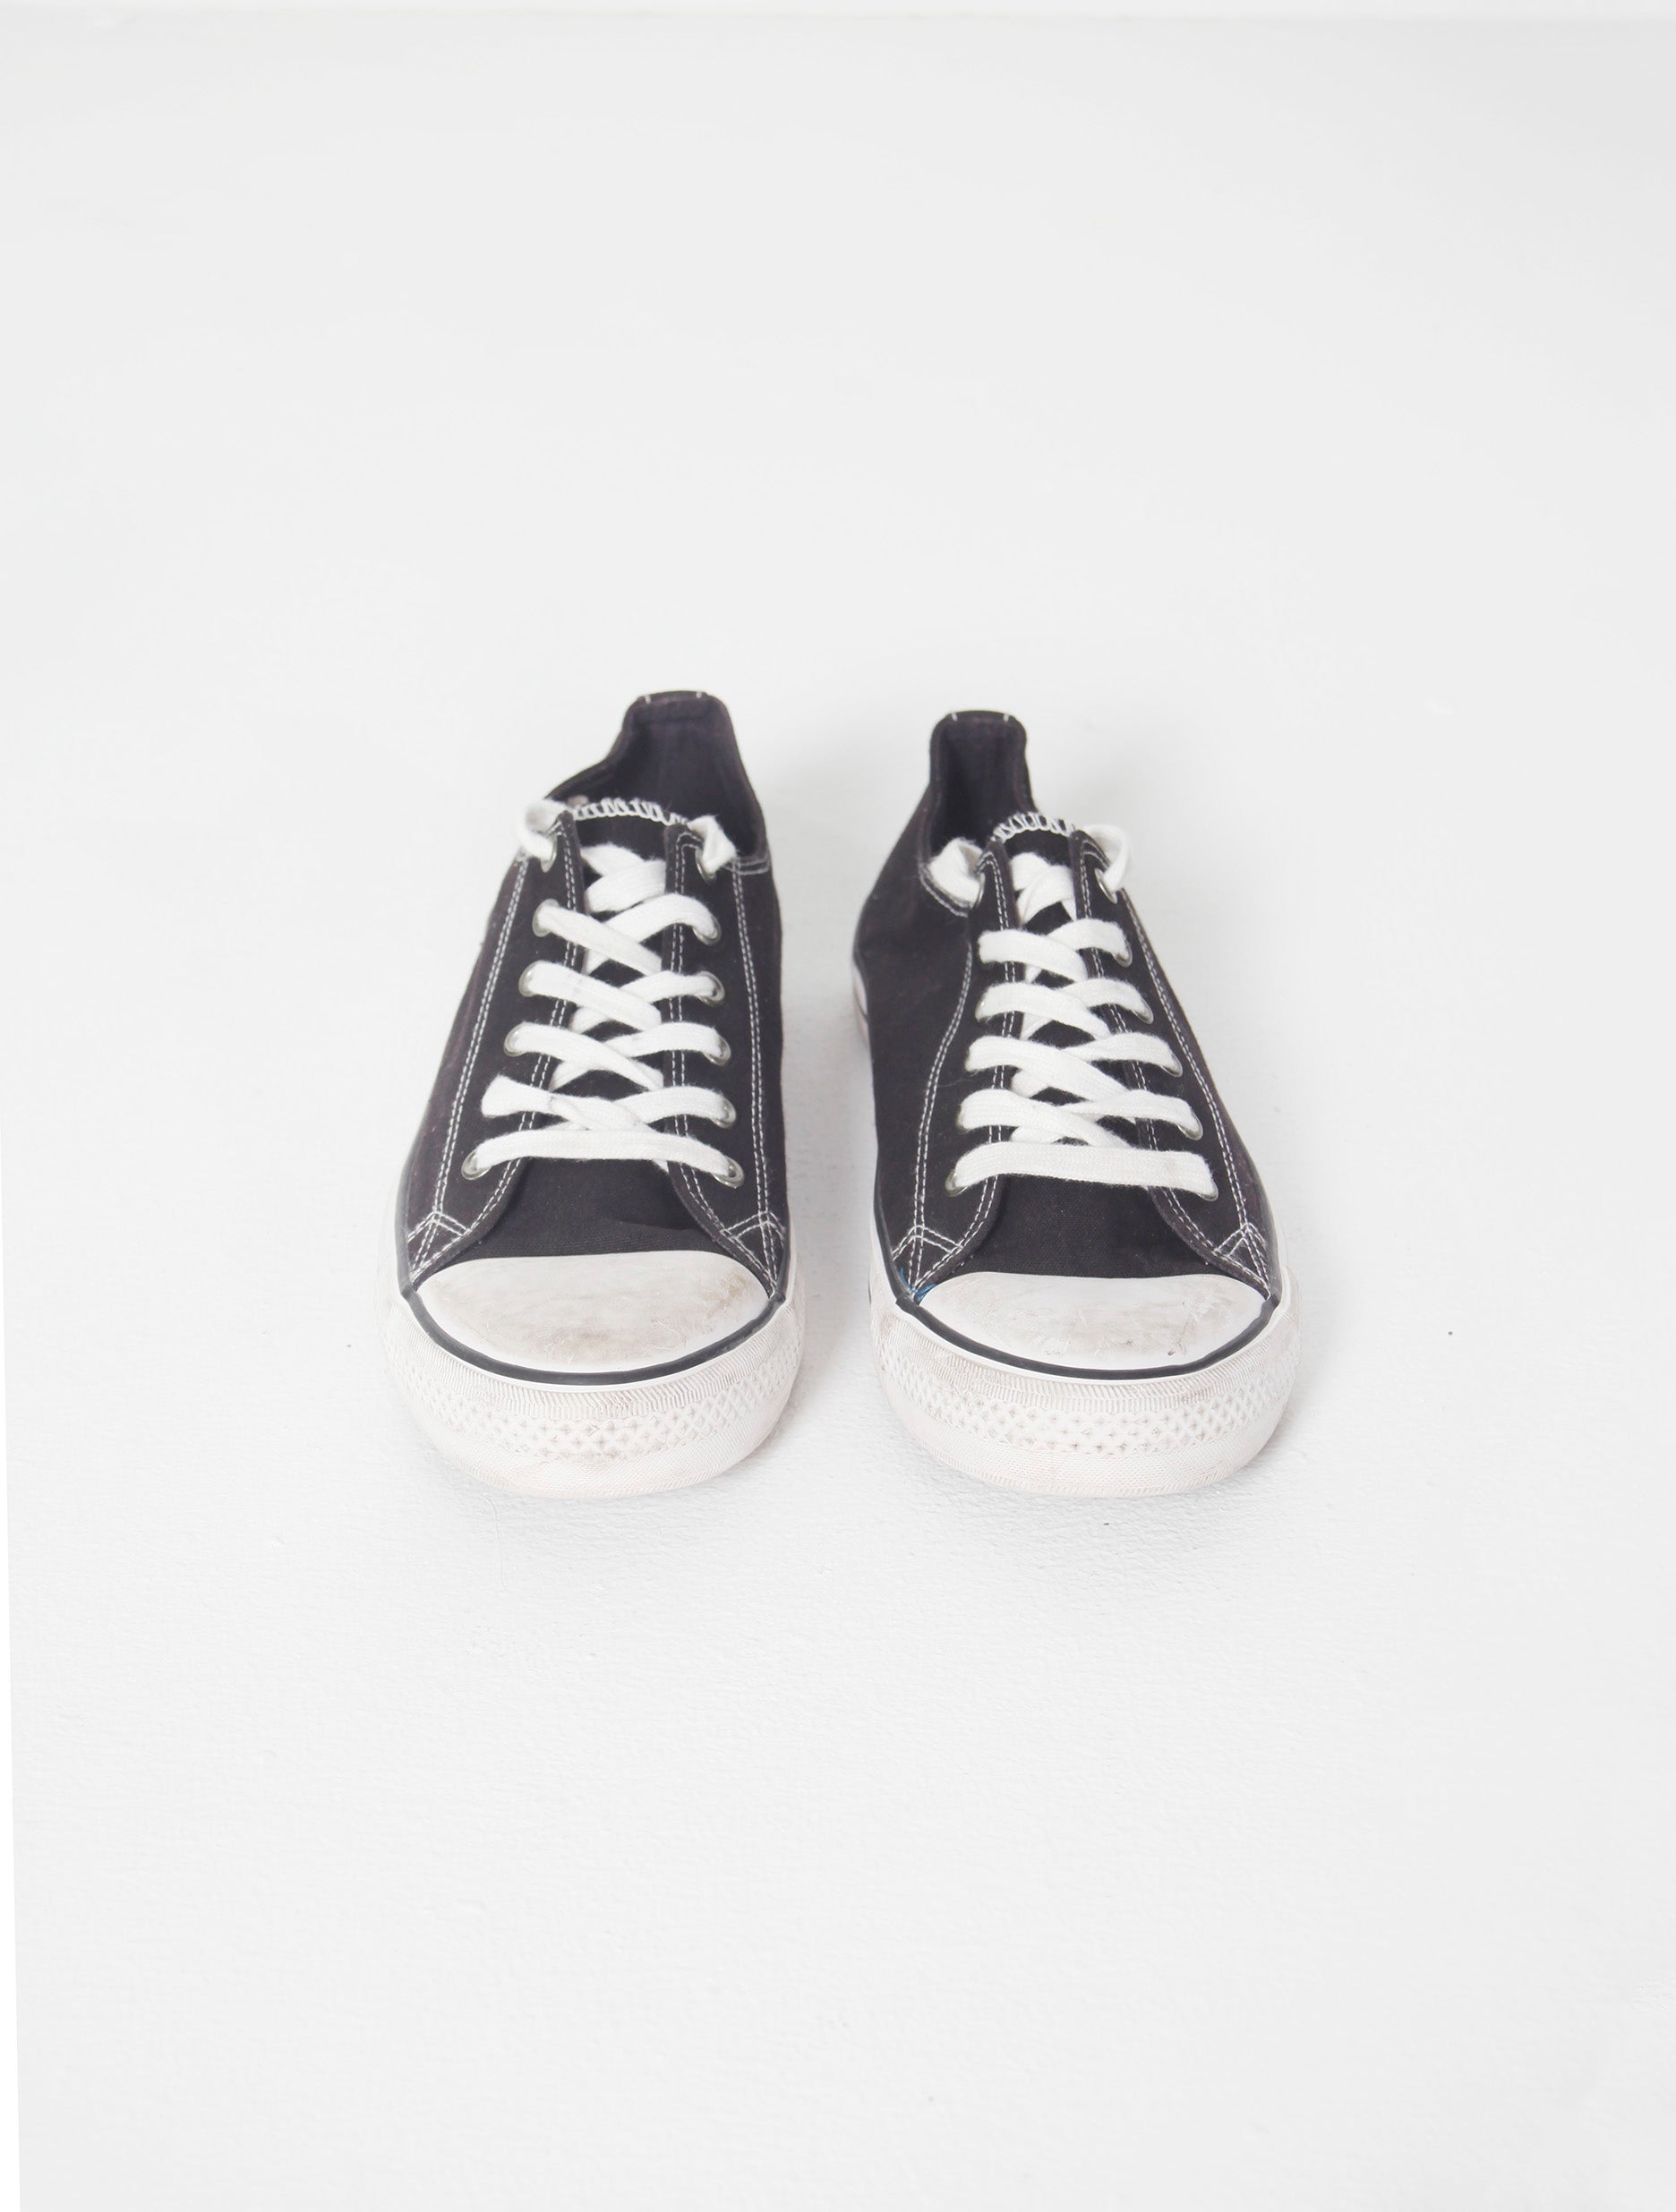 Black/White Lace-Up Sneaker (Eu42)